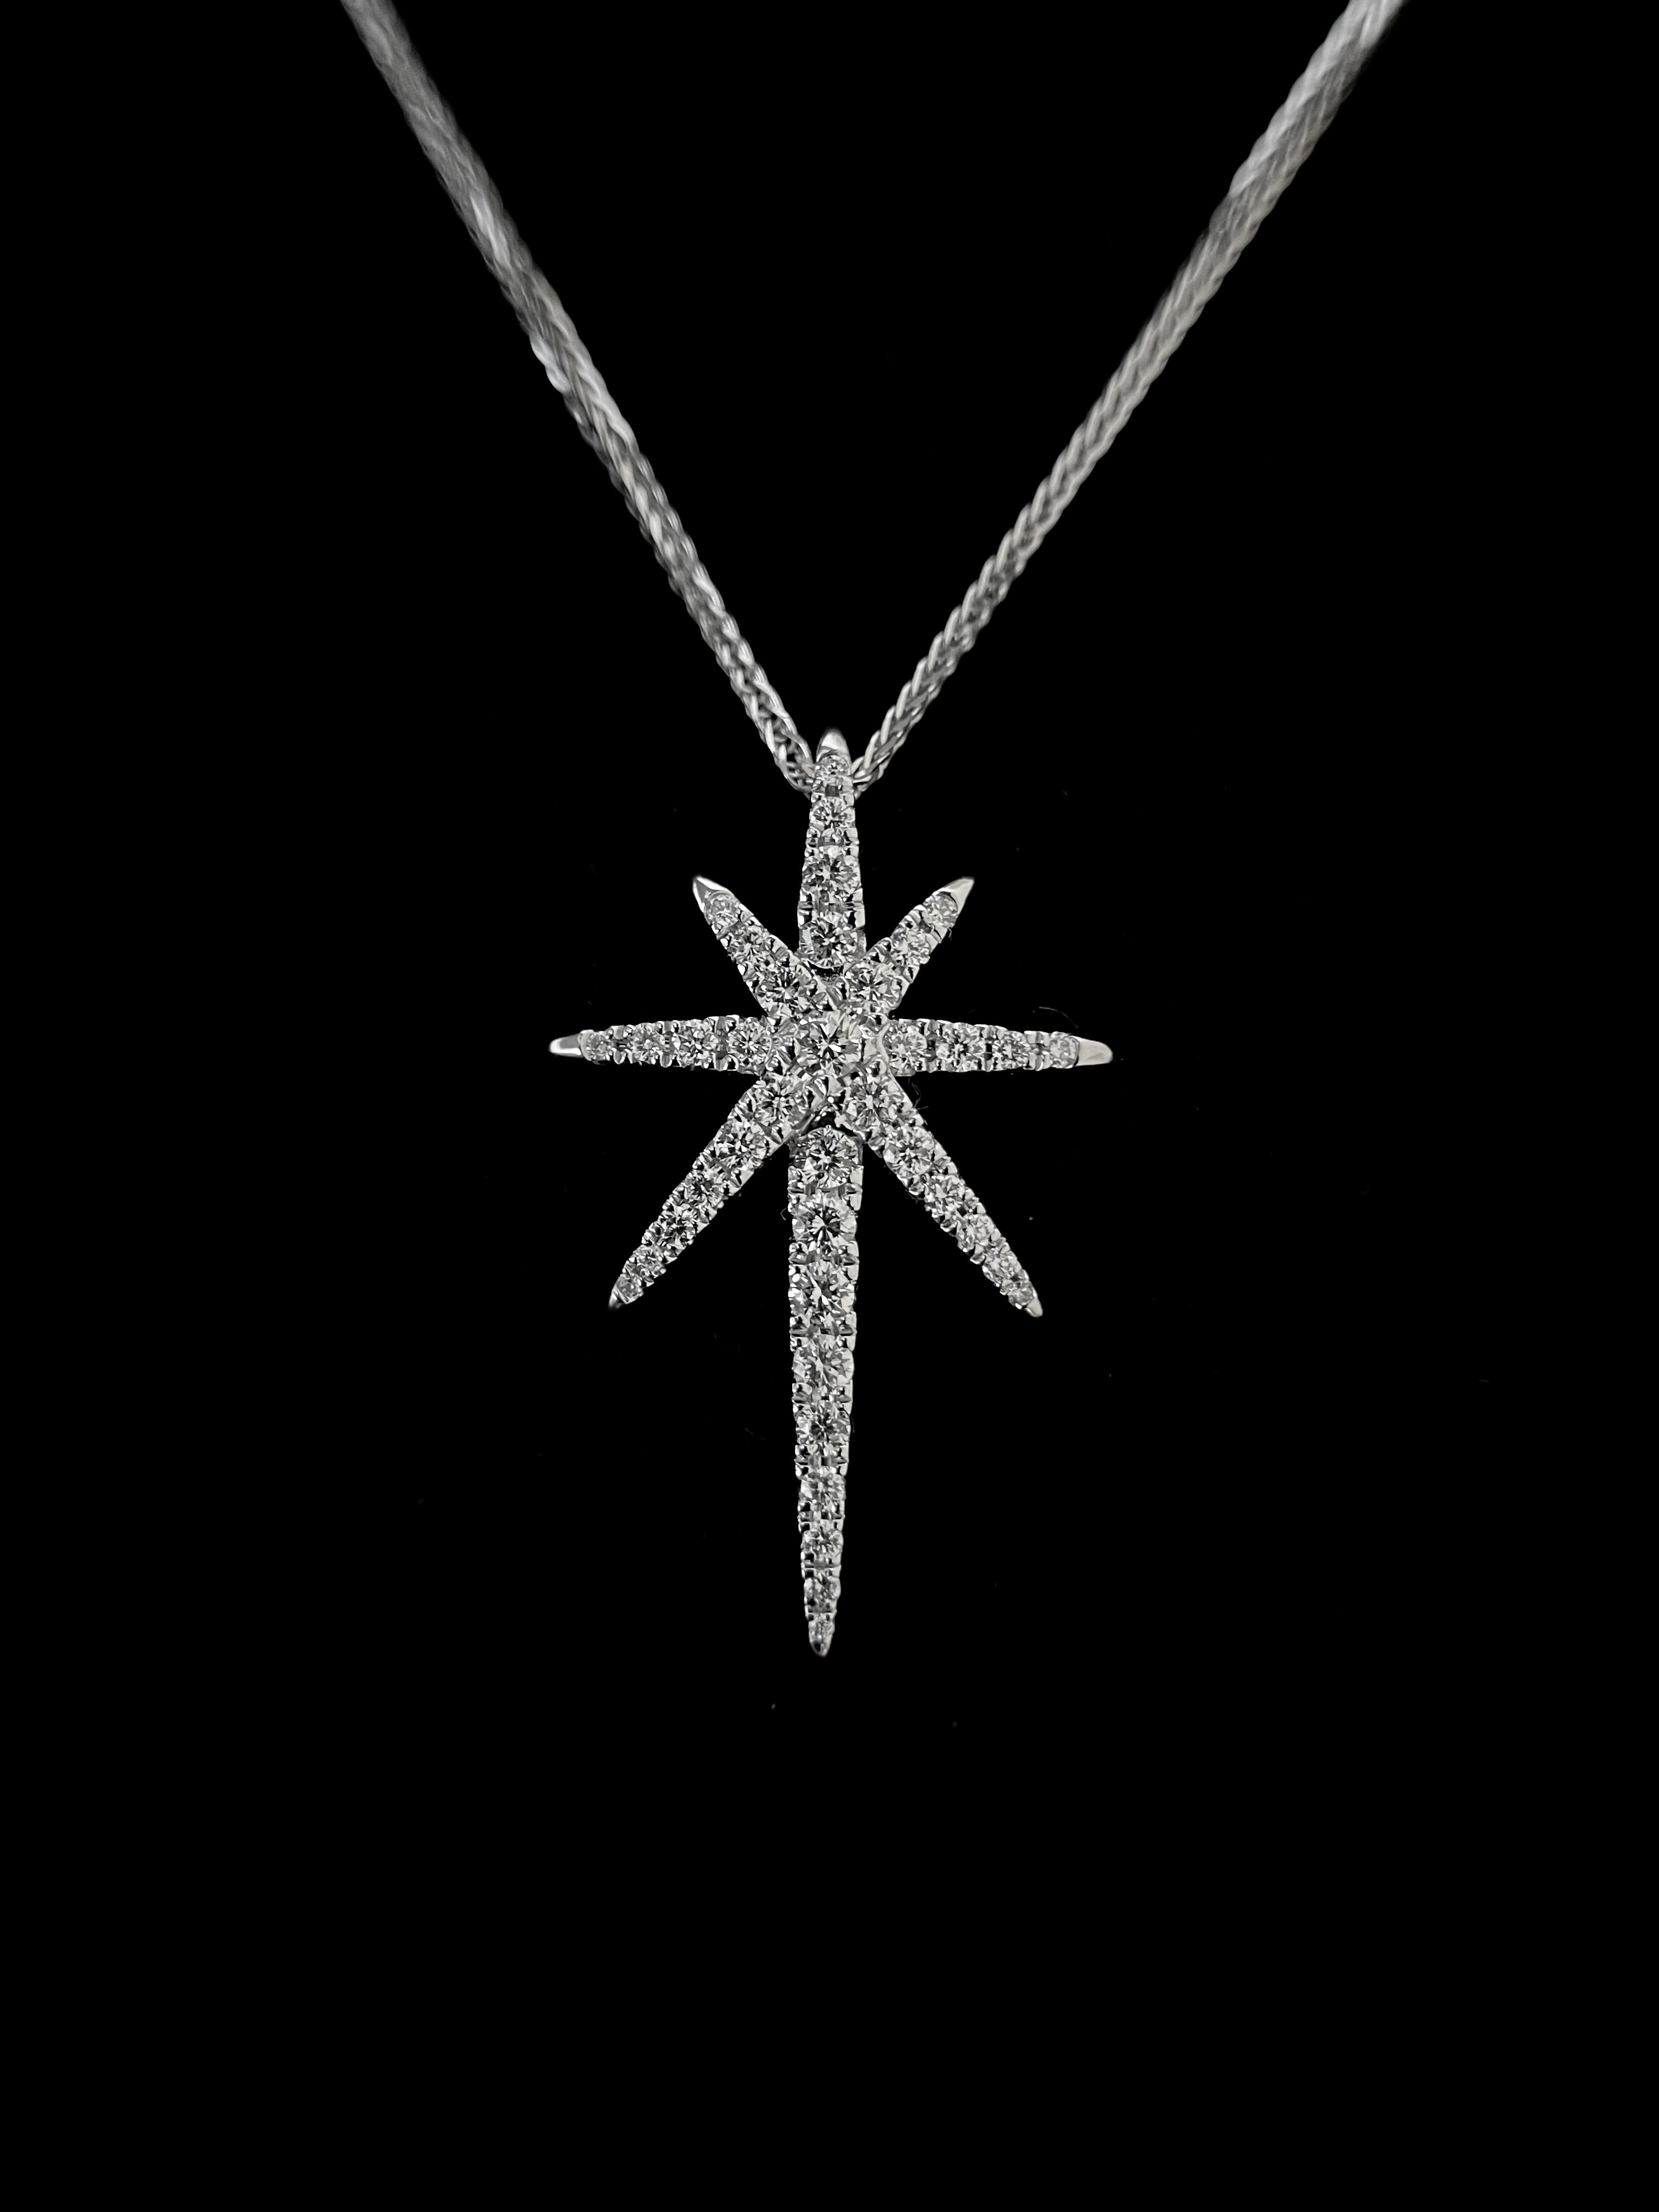 Celestial Diamond Necklace